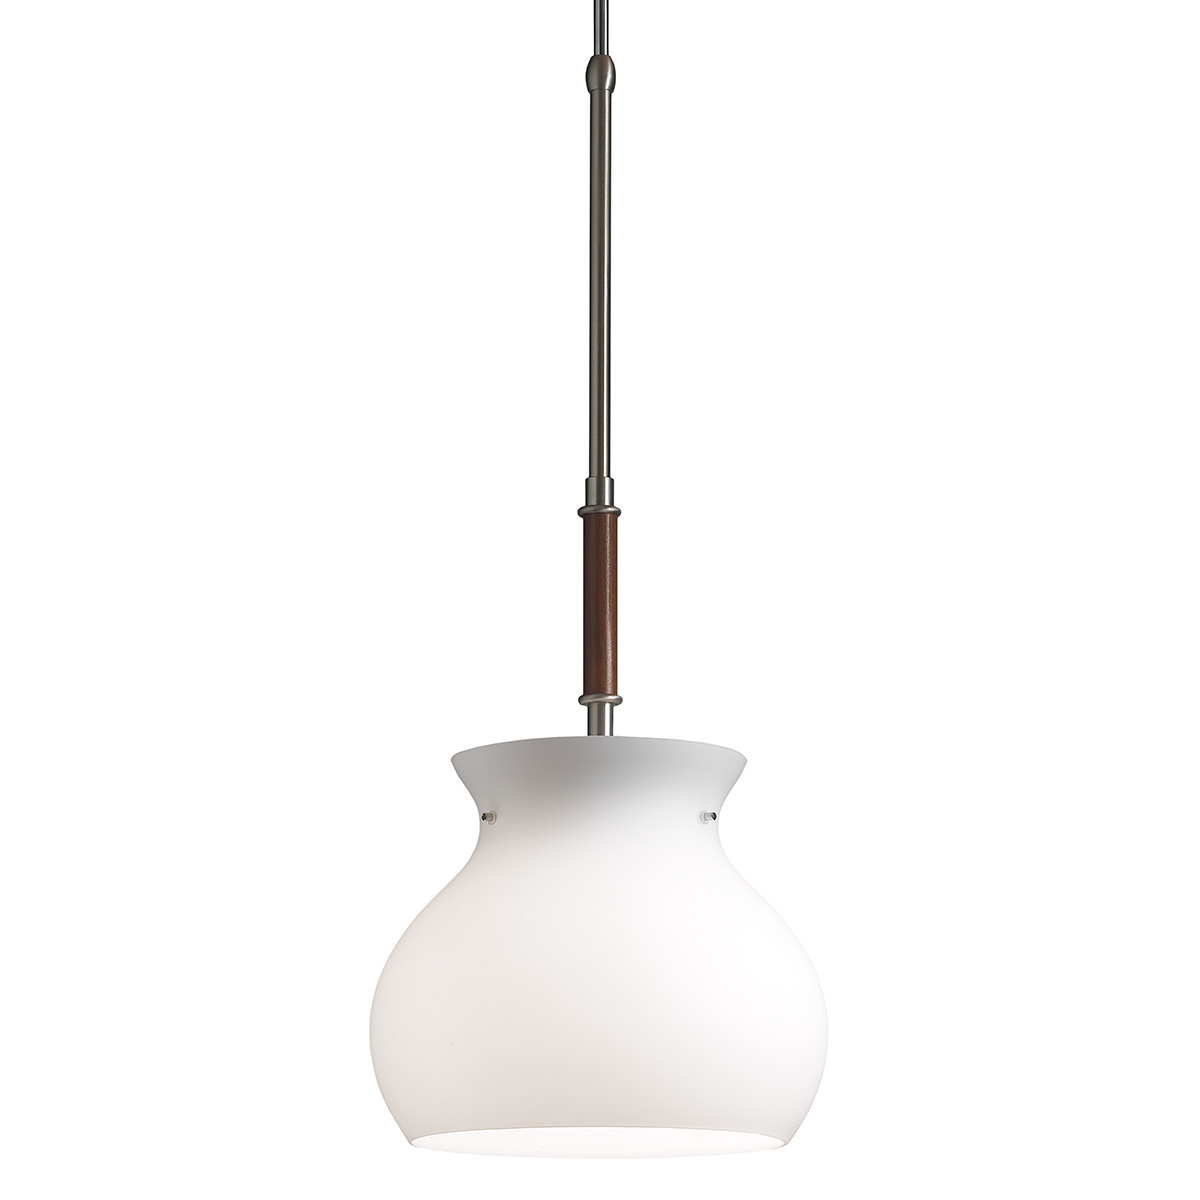 Φωτιστικό κρεμαστό Μουράνο GLOBO murano suspension lamp